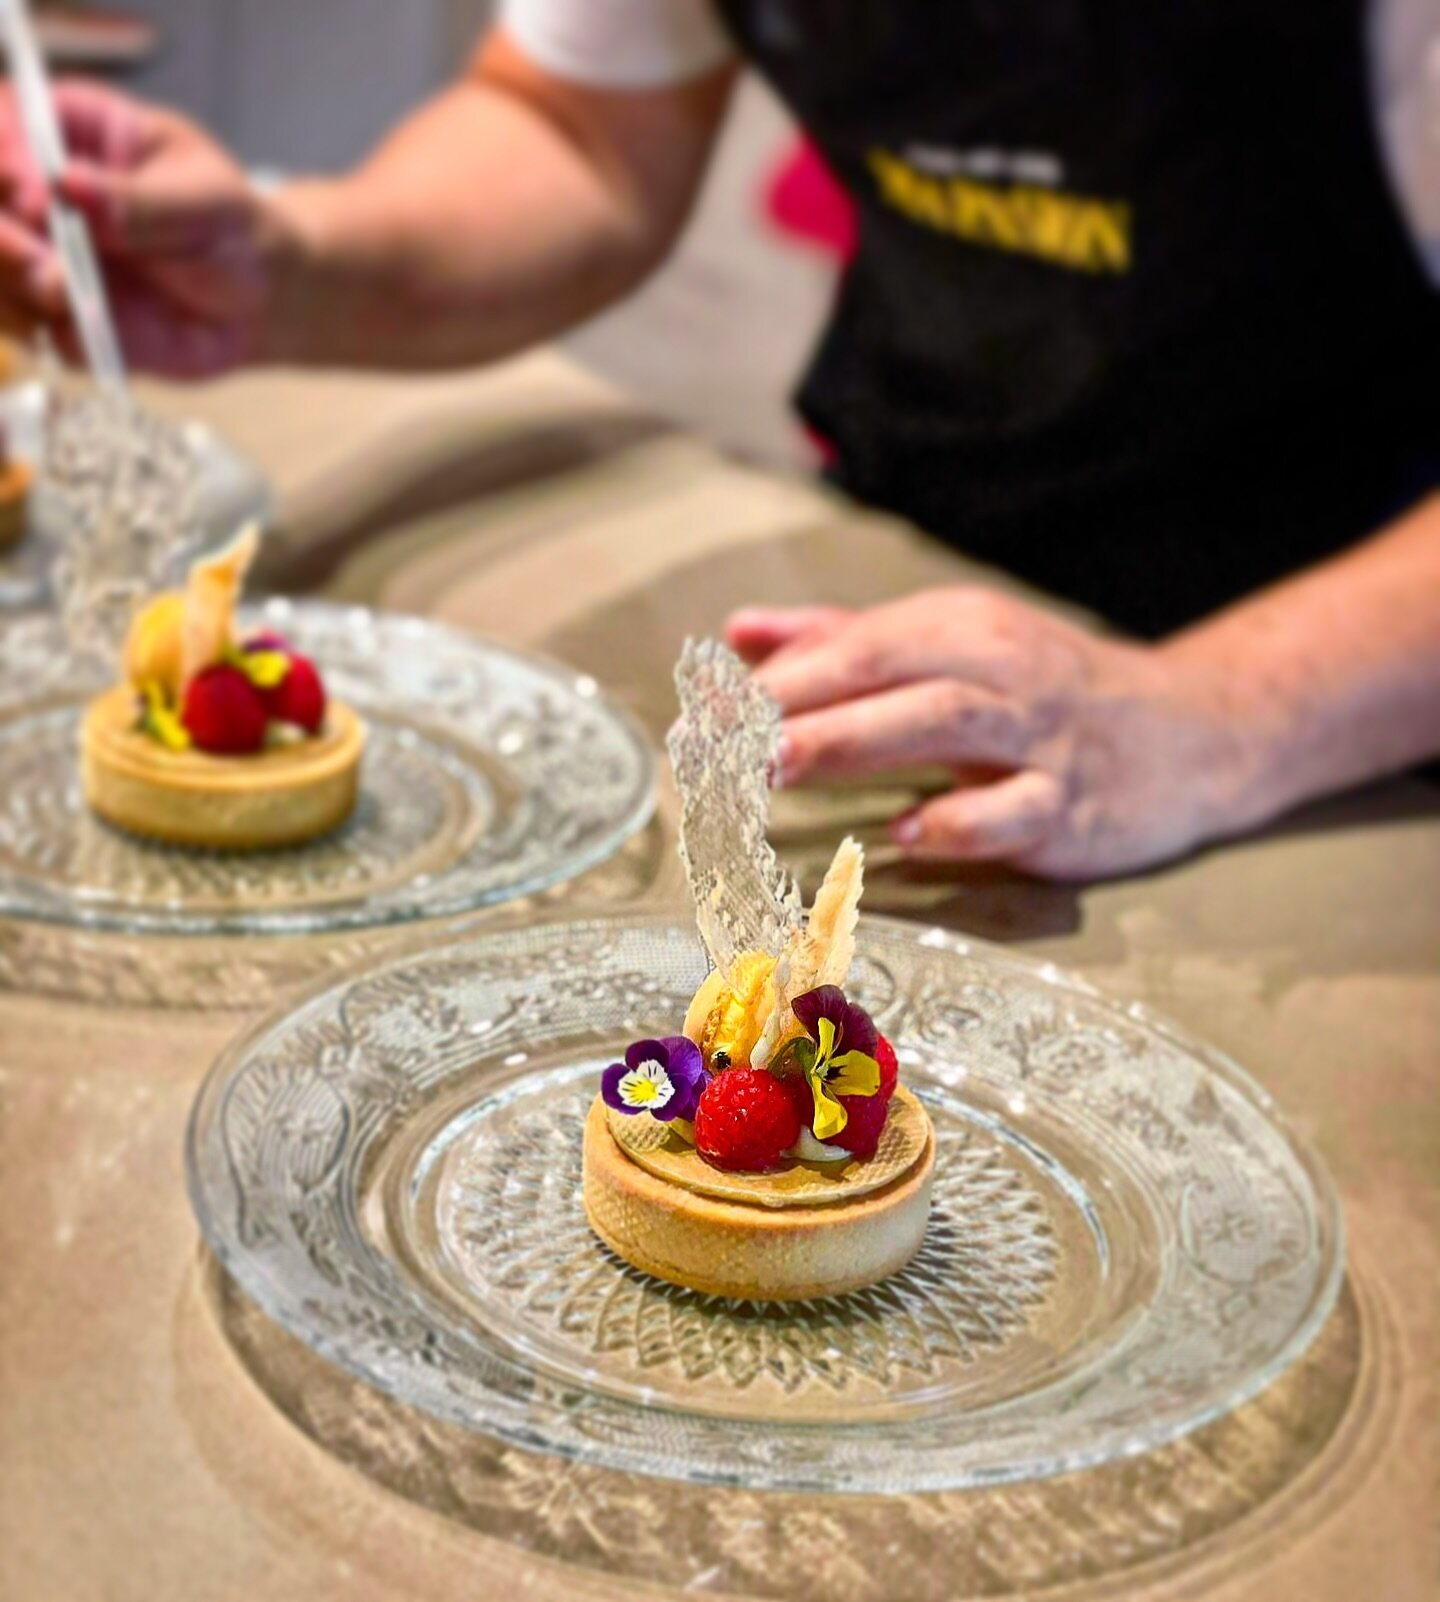 Fancy lemon tart! #lemontart #mapasion #foodartlove #chefstalk #privatechef #melbournefoodie #melbournechef #privatedining #chefsofinstagram #dessertporn #desserttable #tastingmenu